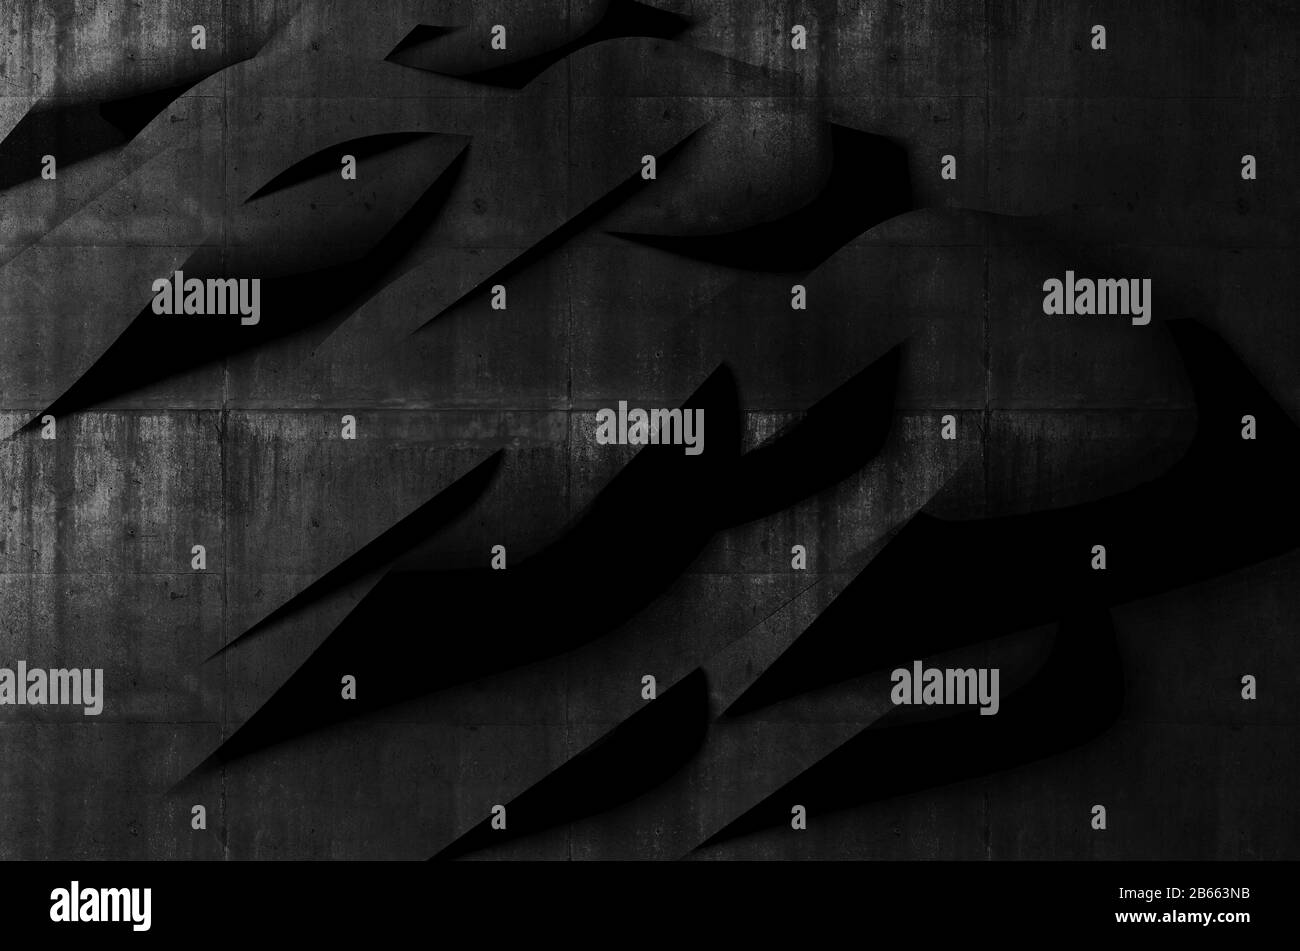 Astratto sfondo nero minimo, installazione a strisce piegate con motivo di calcestruzzo ruvido, illustrazione di rendering 3d Foto Stock